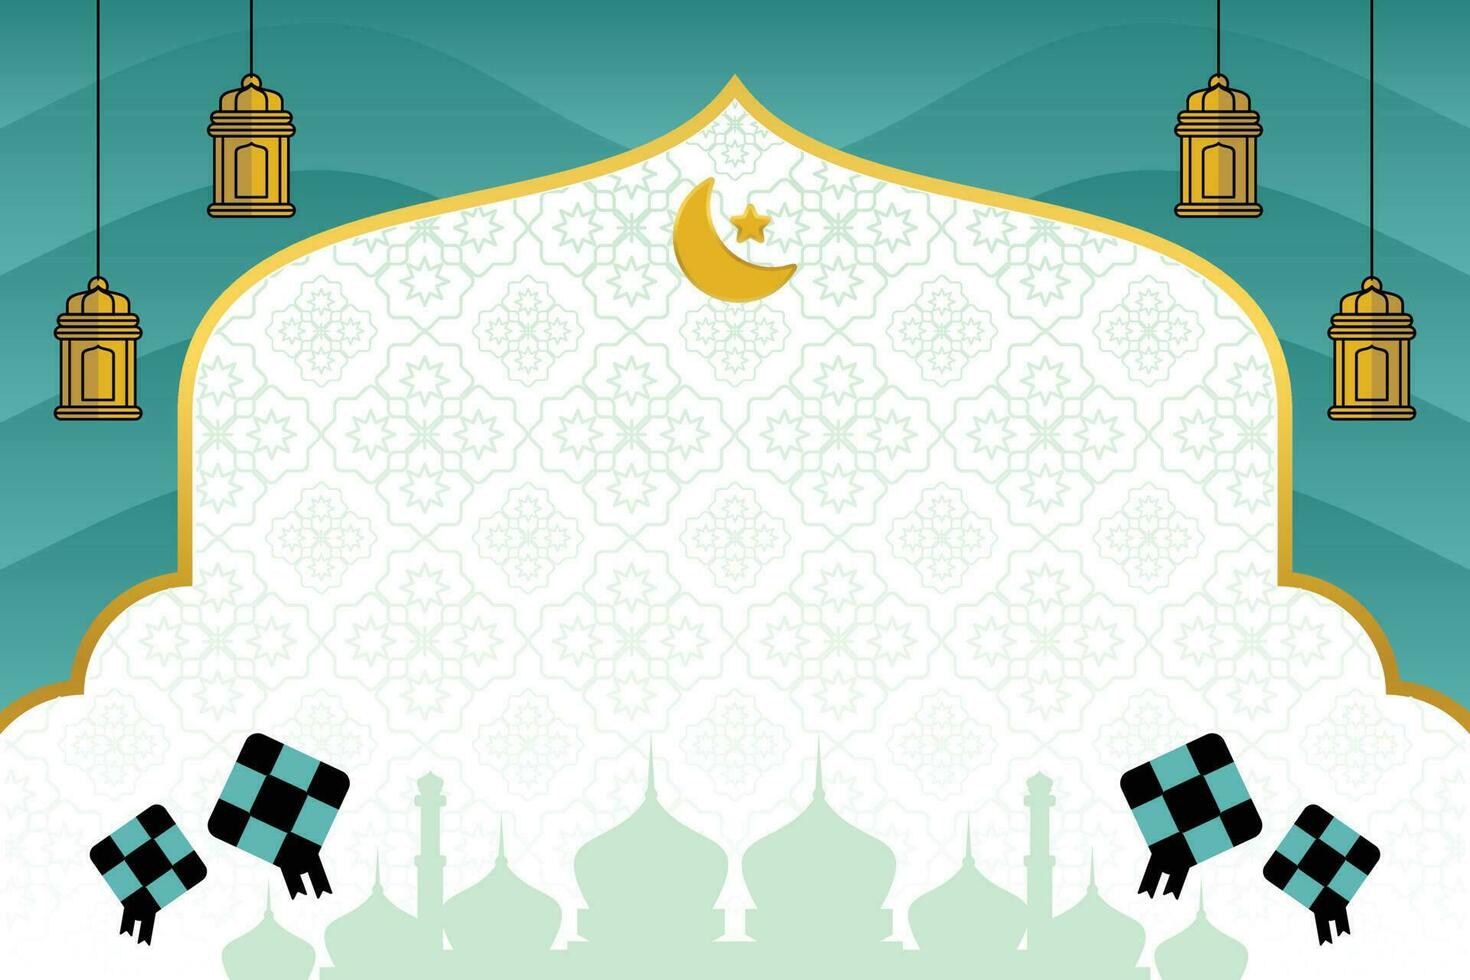 editable eid rebaja bandera modelo. con diamante adornos, luna, estrellas, linternas y el silueta de un mezquita. diseño para social medios de comunicación, póster, saludo tarjeta, red. islámico vector ilustración